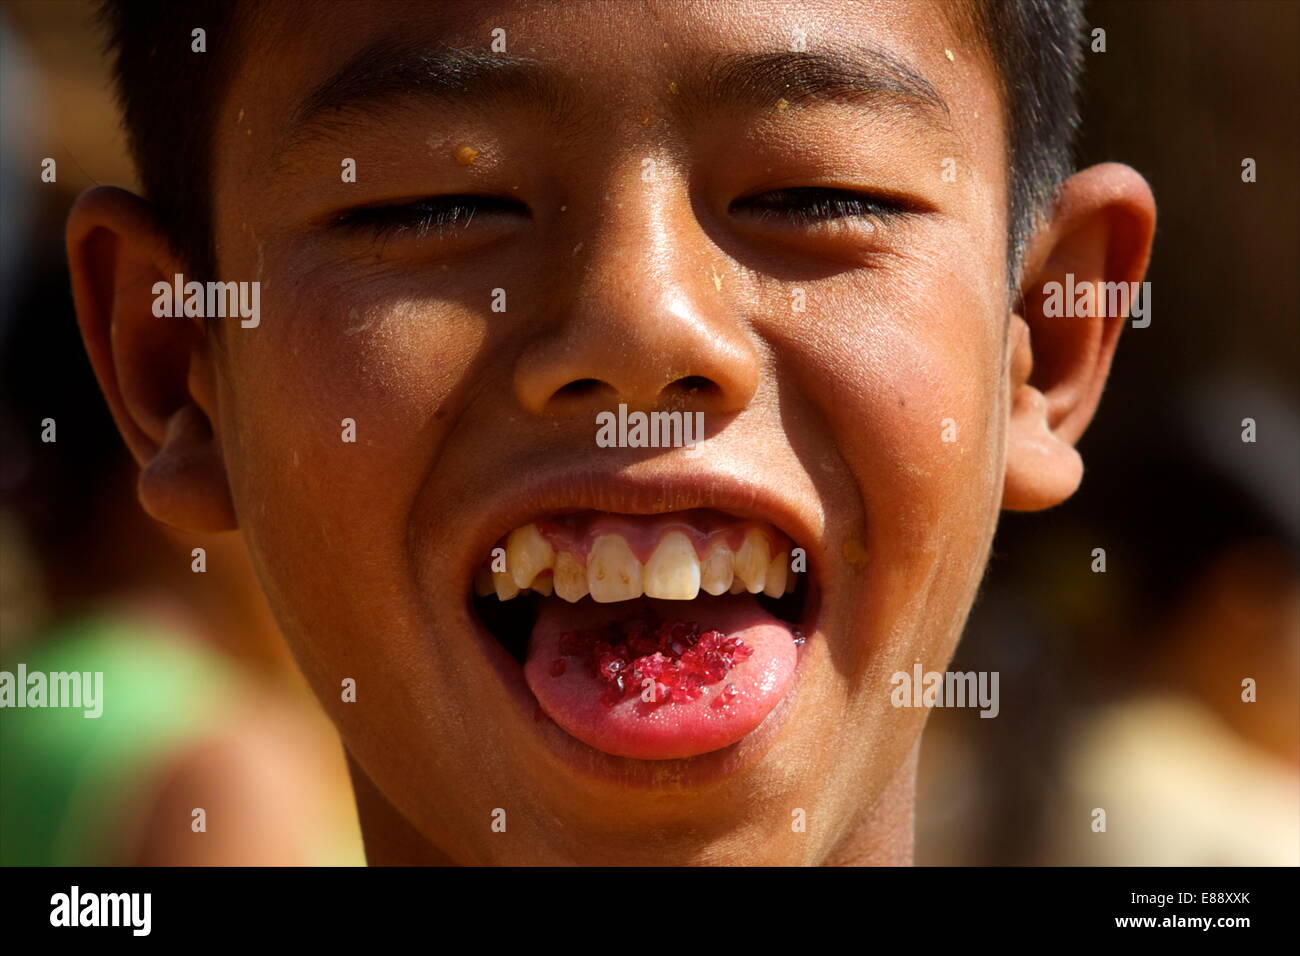 Pour protéger les pierres, les enfants de les mettre dans leur bouche pendant l'exploitation minière, de Mogok, Myanmar (Birmanie), l'Asie Banque D'Images